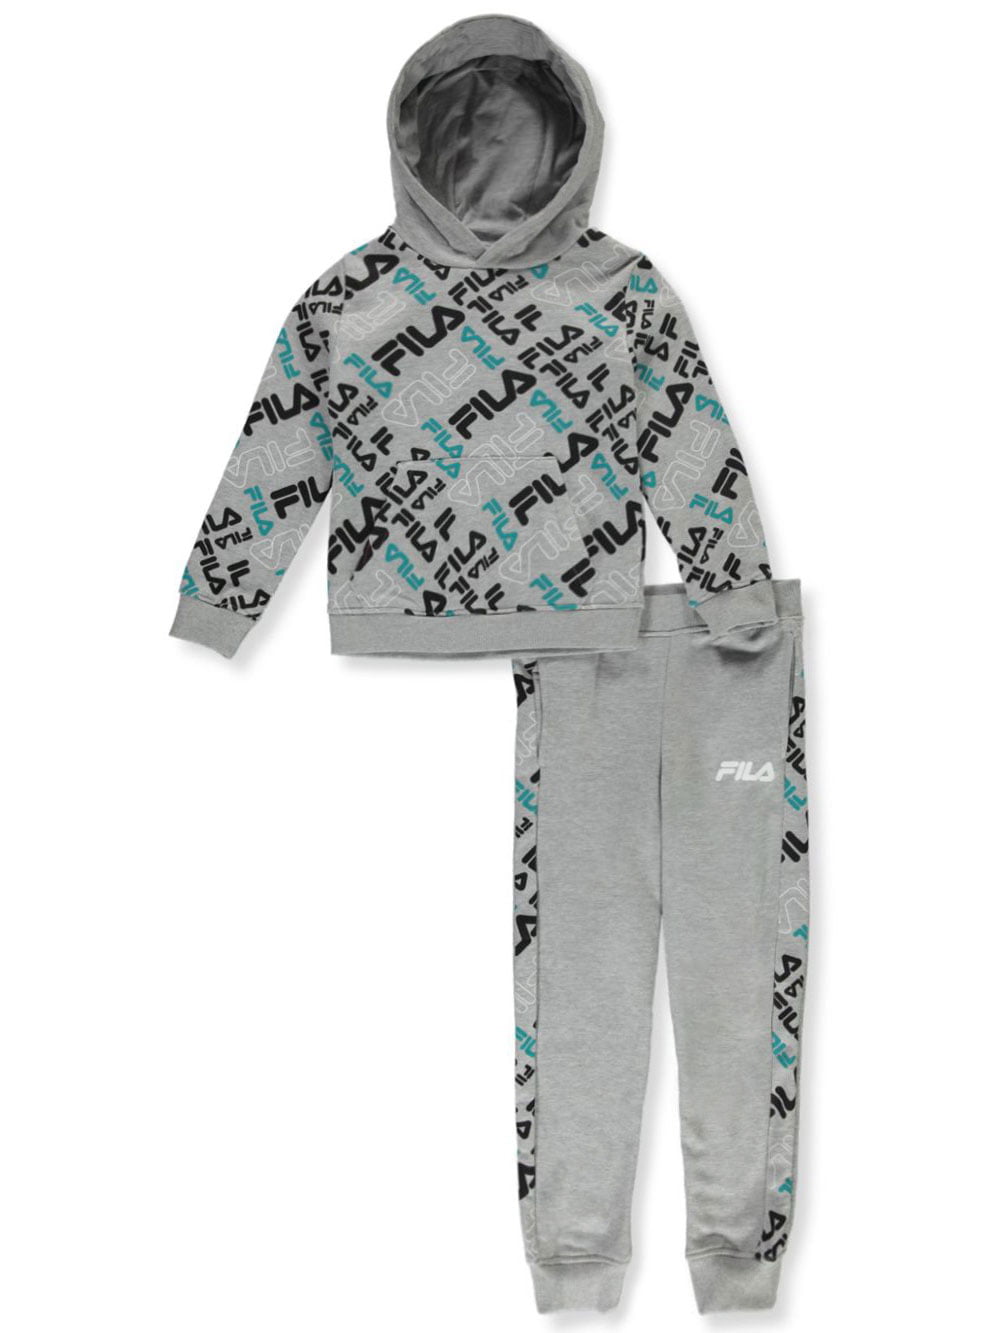 Fila Boys' 2-Piece Joggers Set Outfit - gray, 4 Boys) - Walmart.com